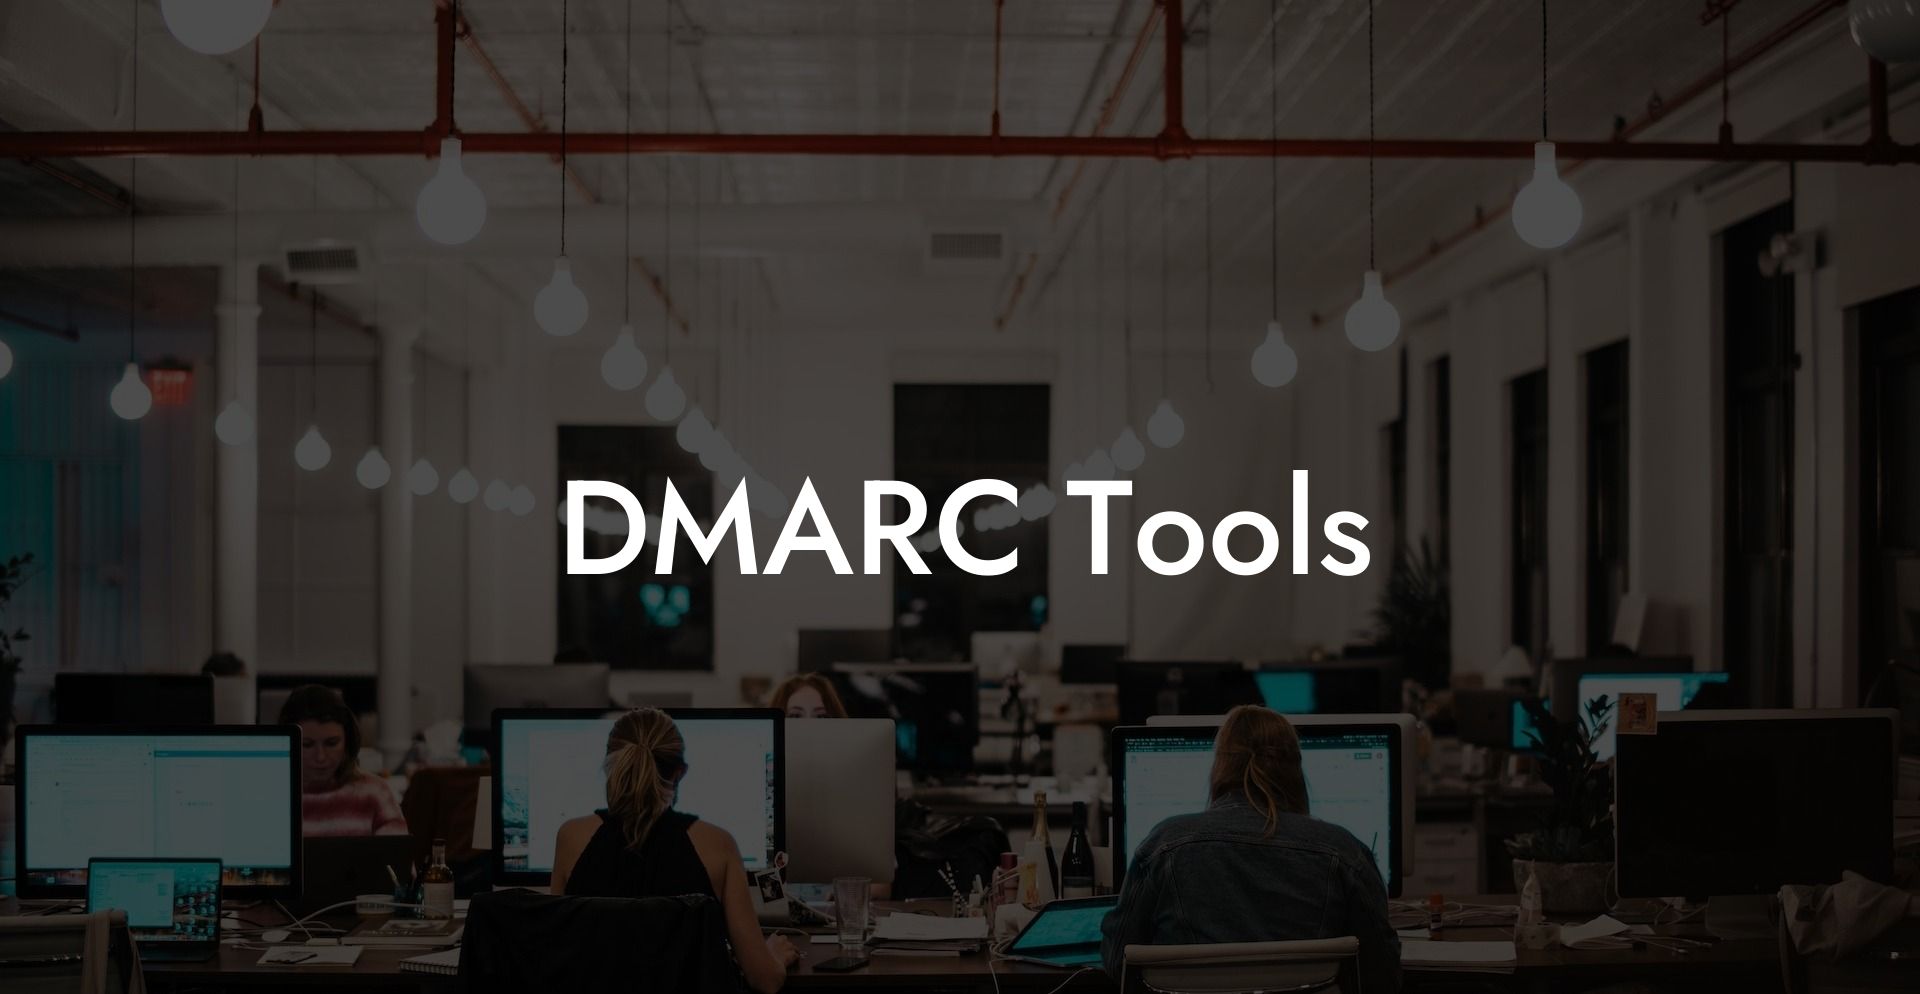 DMARC Tools